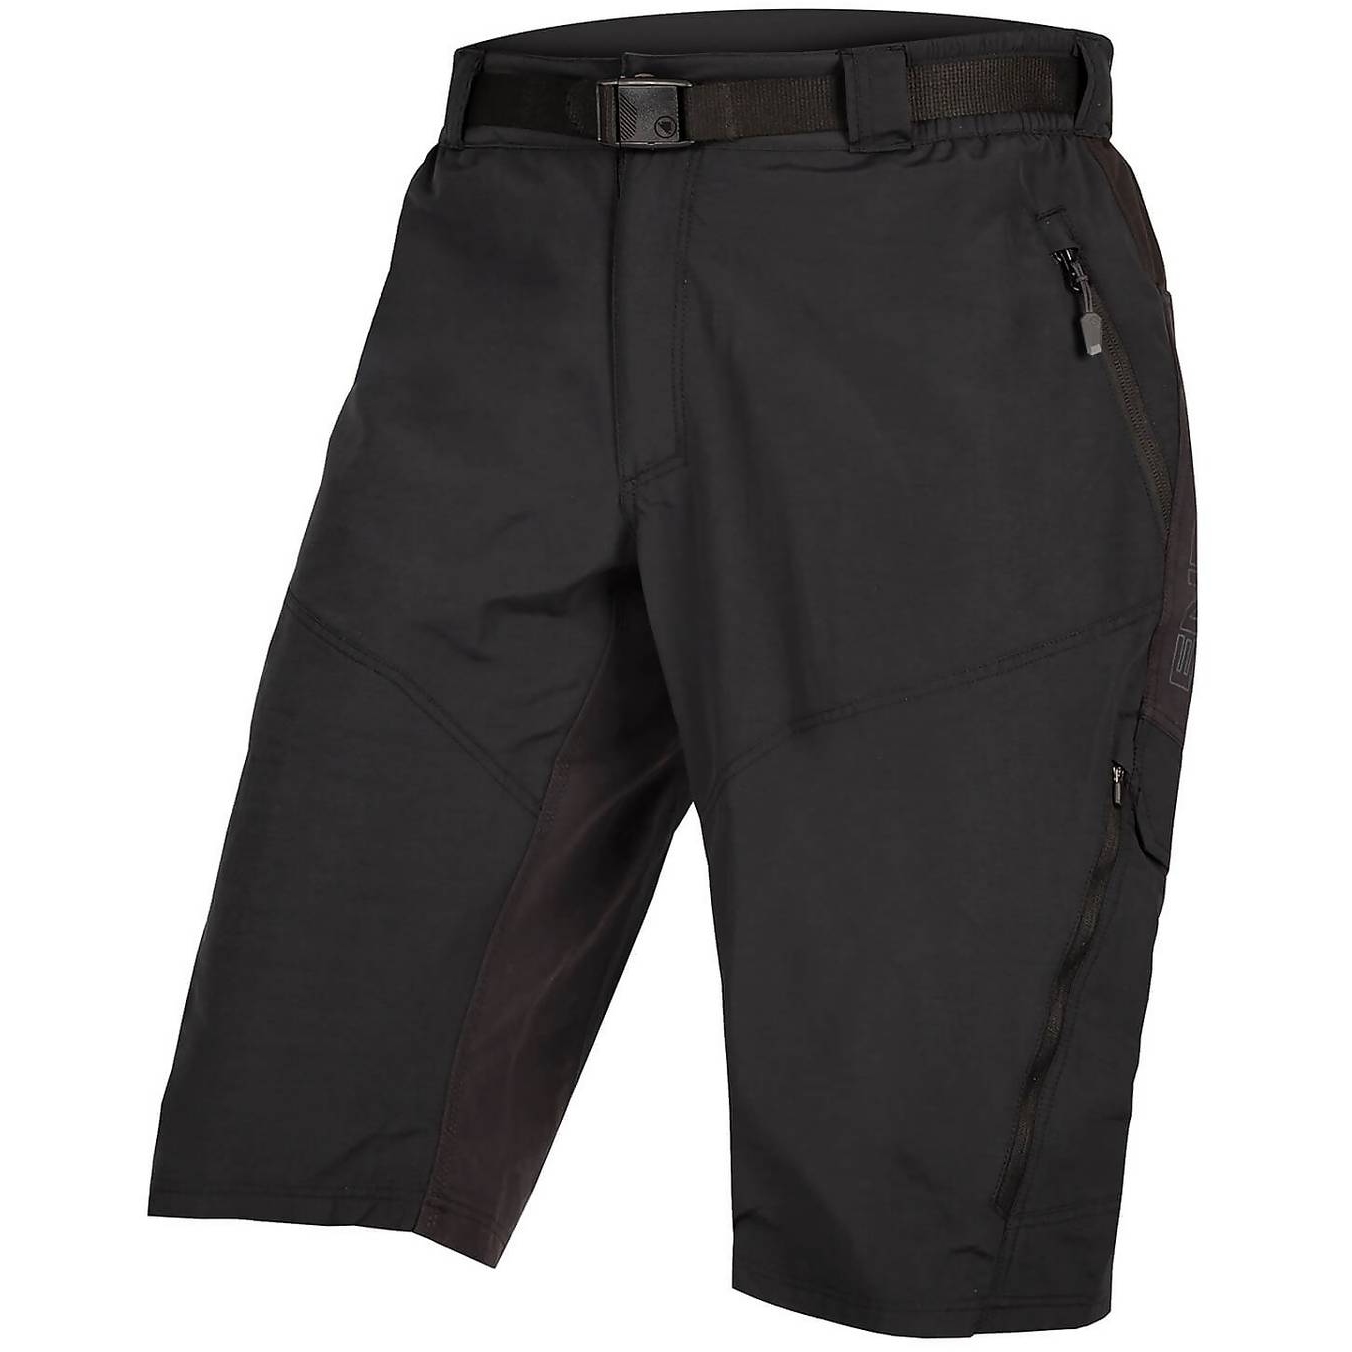 Productfoto van Endura Hummvee Shorts Heren - zwart